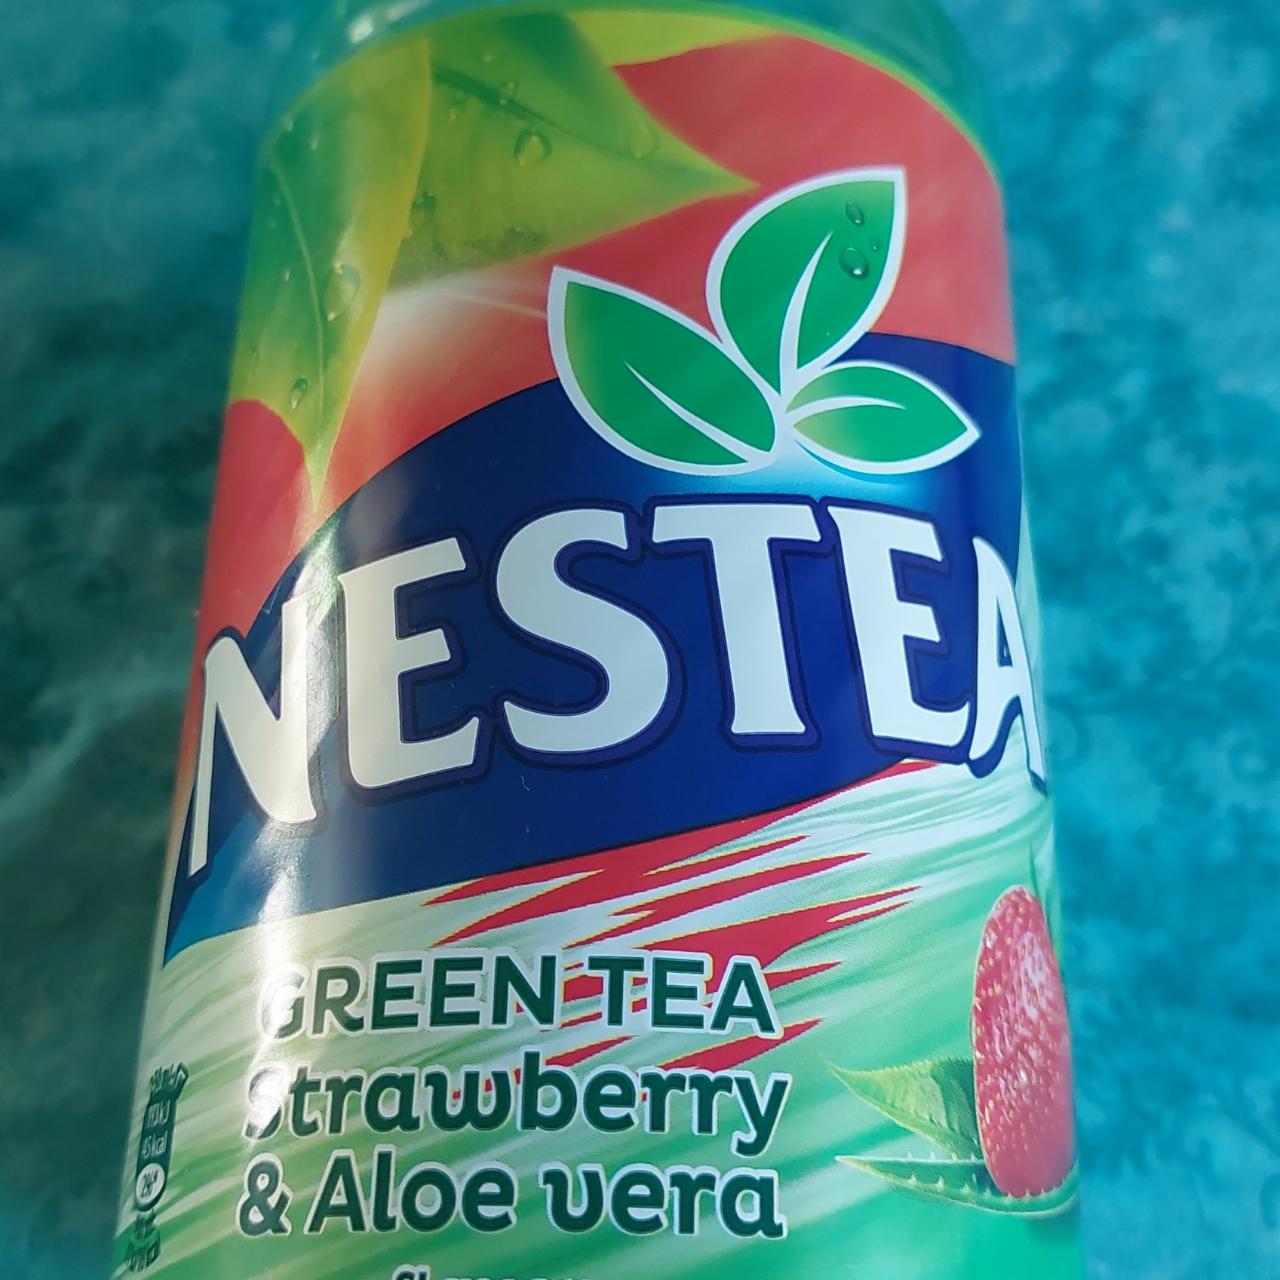 Fotografie - Nestea Green Tea Strawberry & Aloe vera flavour Nestlé